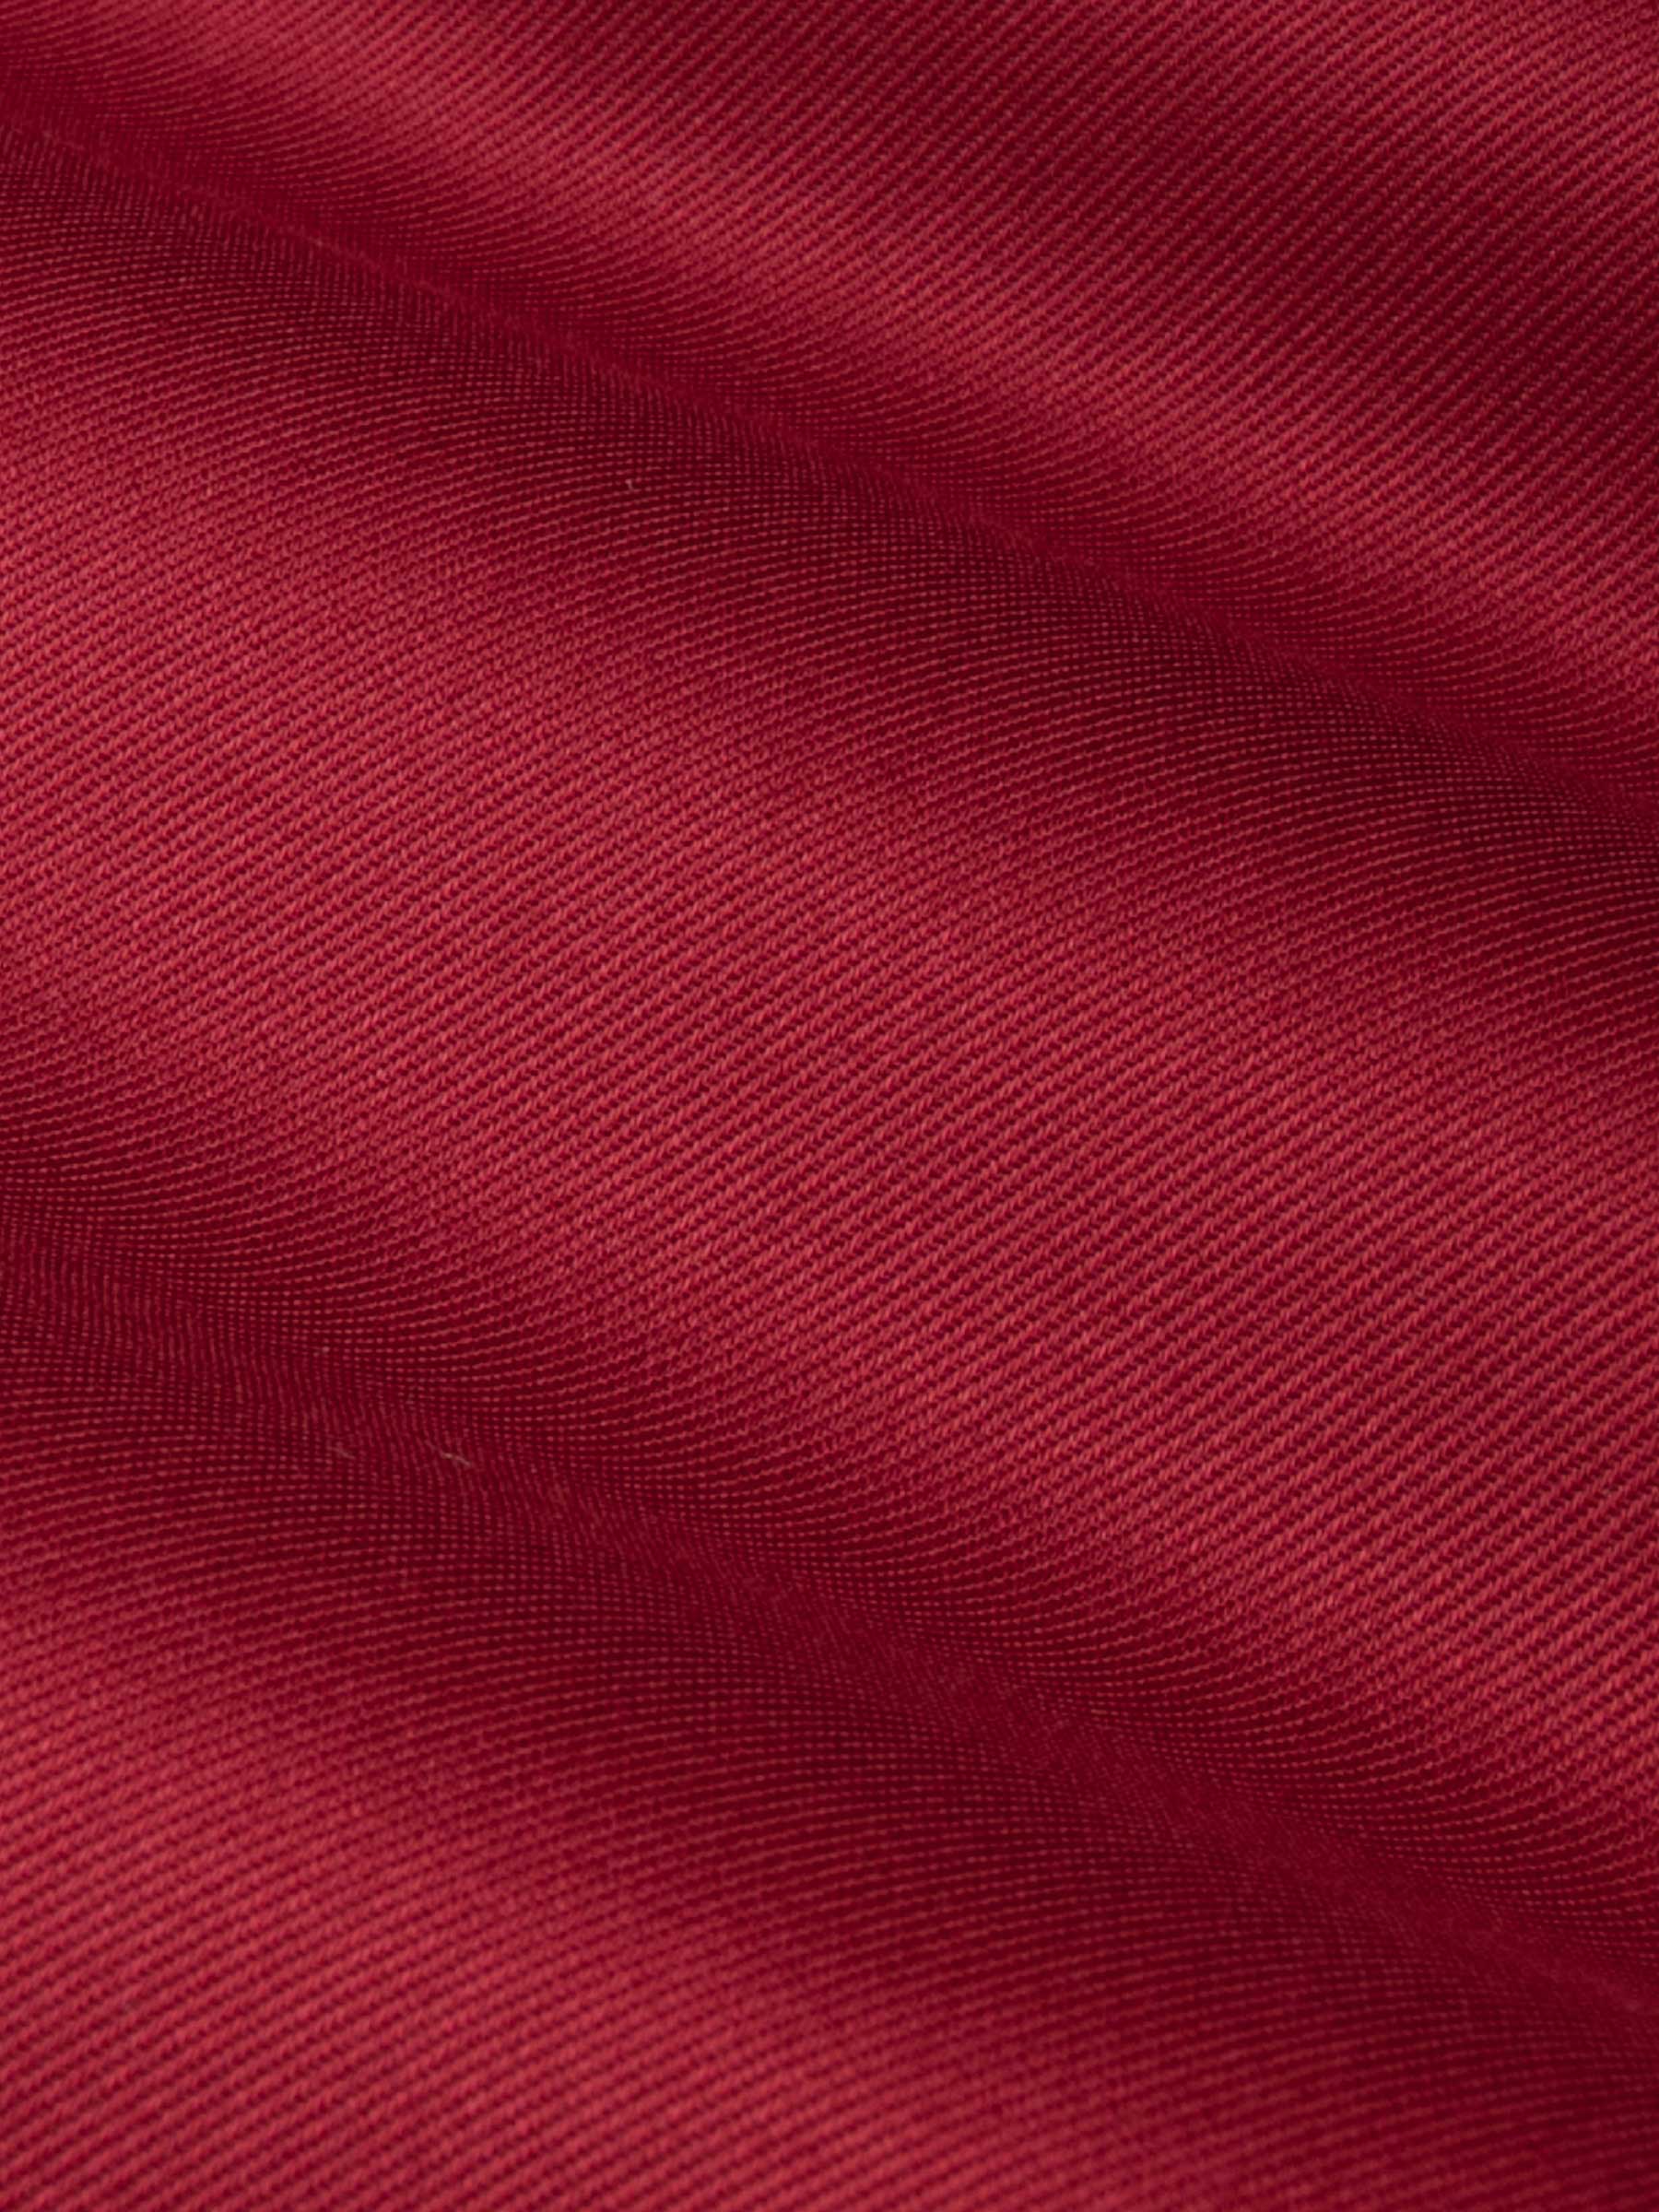 Lance Solid Red Overhemd Lange Mouw-L-XL